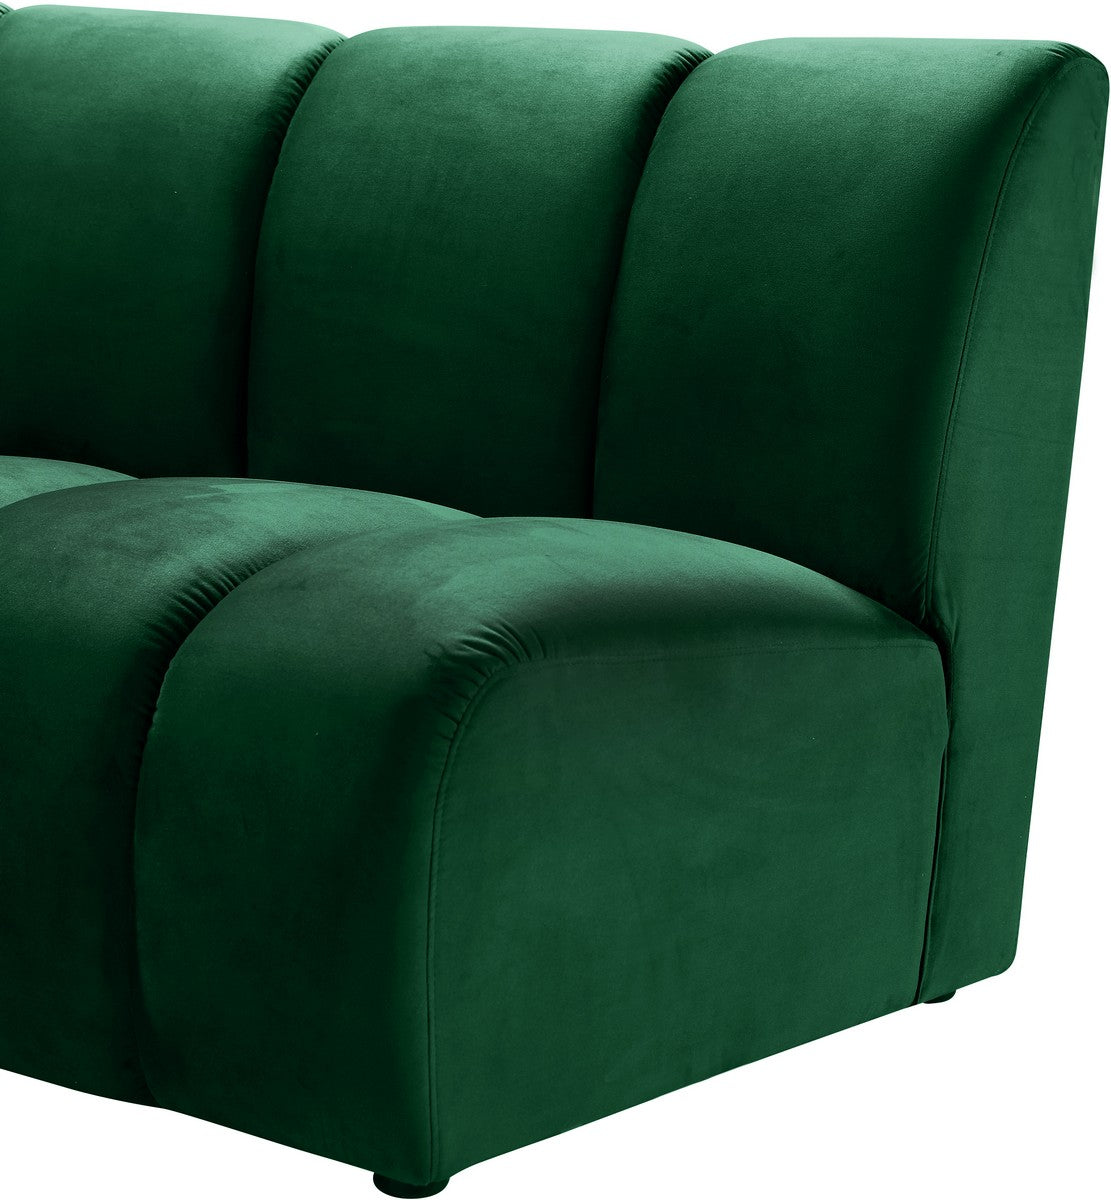 Meridian Furniture Infinity Green Velvet 6pc. Modular Sectional